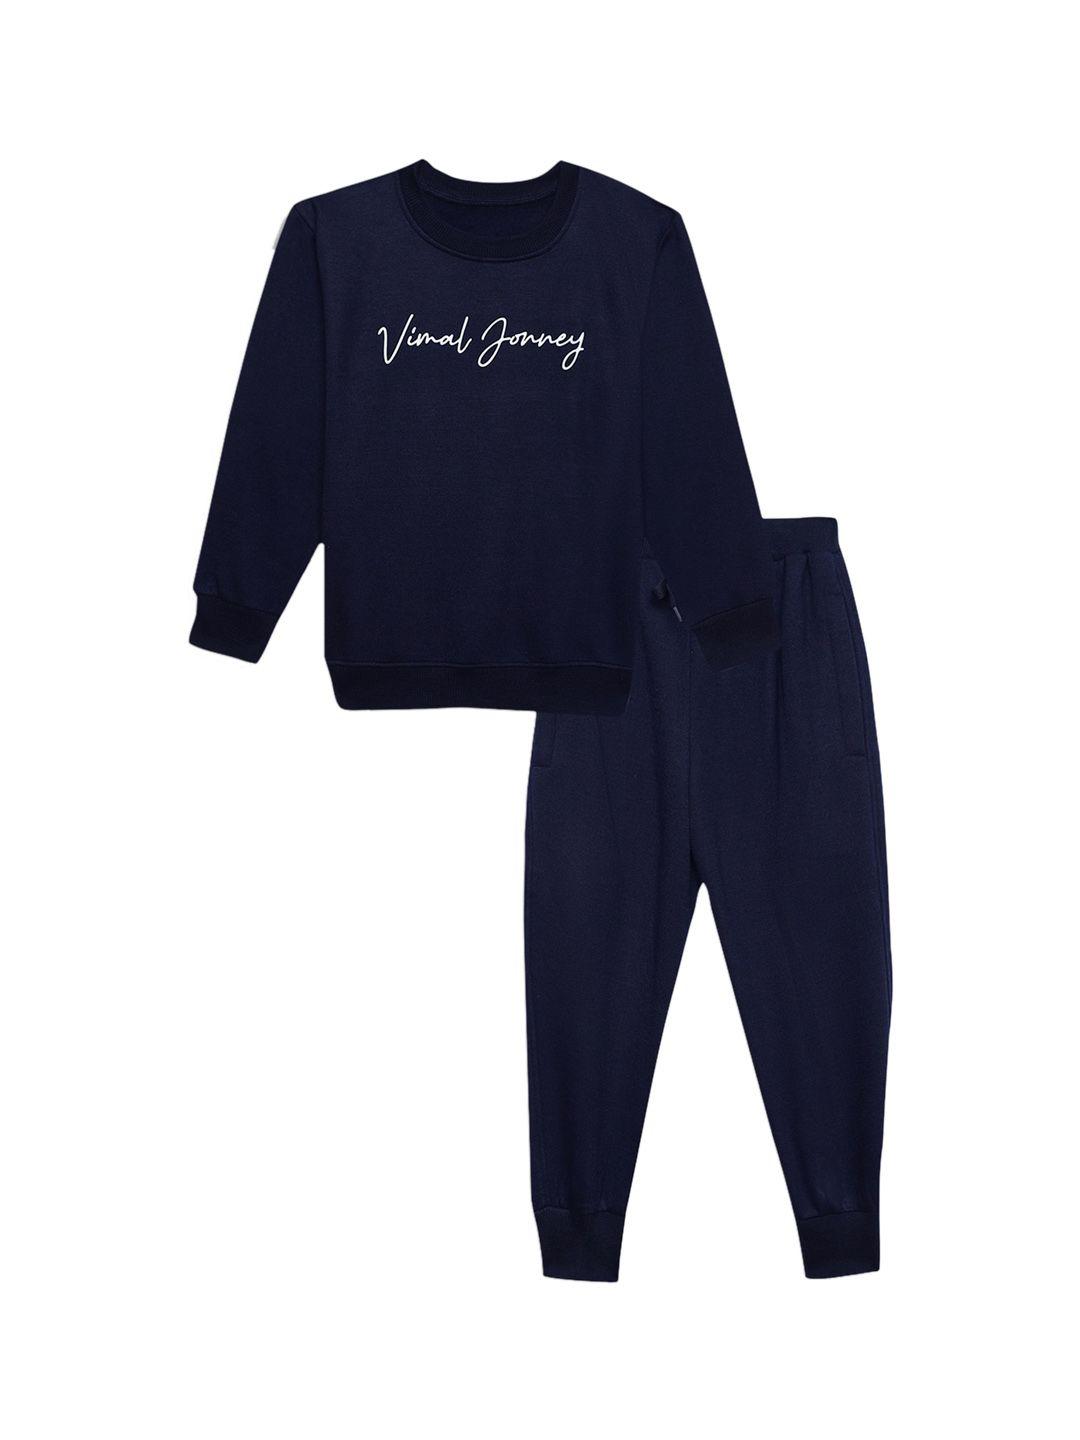 VIMAL JONNEY Printed Clothing Set